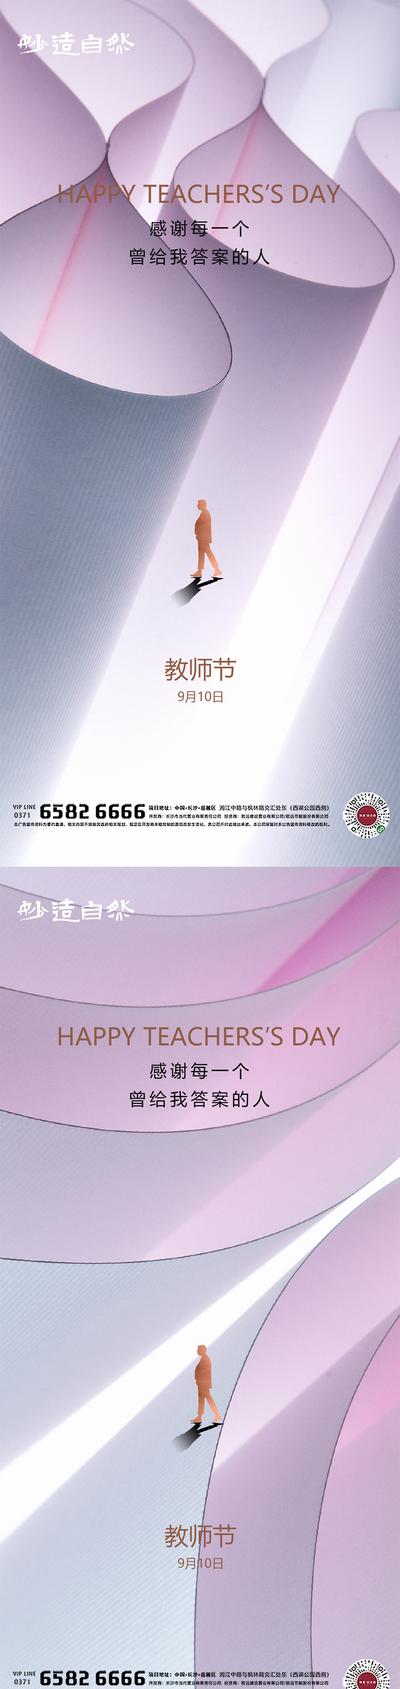 南门网 教师节系列海报